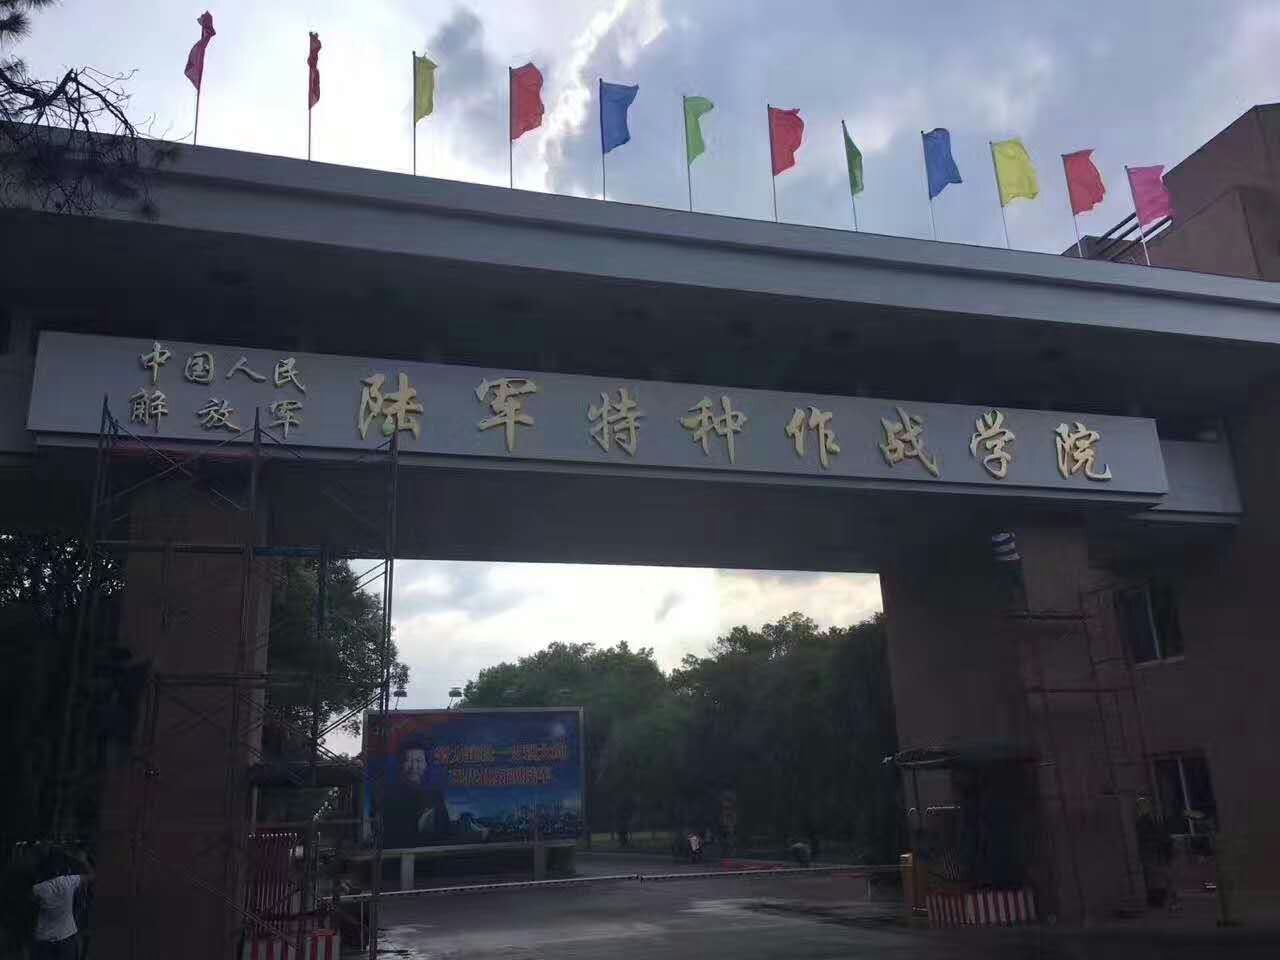 中國人民解放軍陸軍特種作戰學院(中國人民解放軍特種作戰學院)